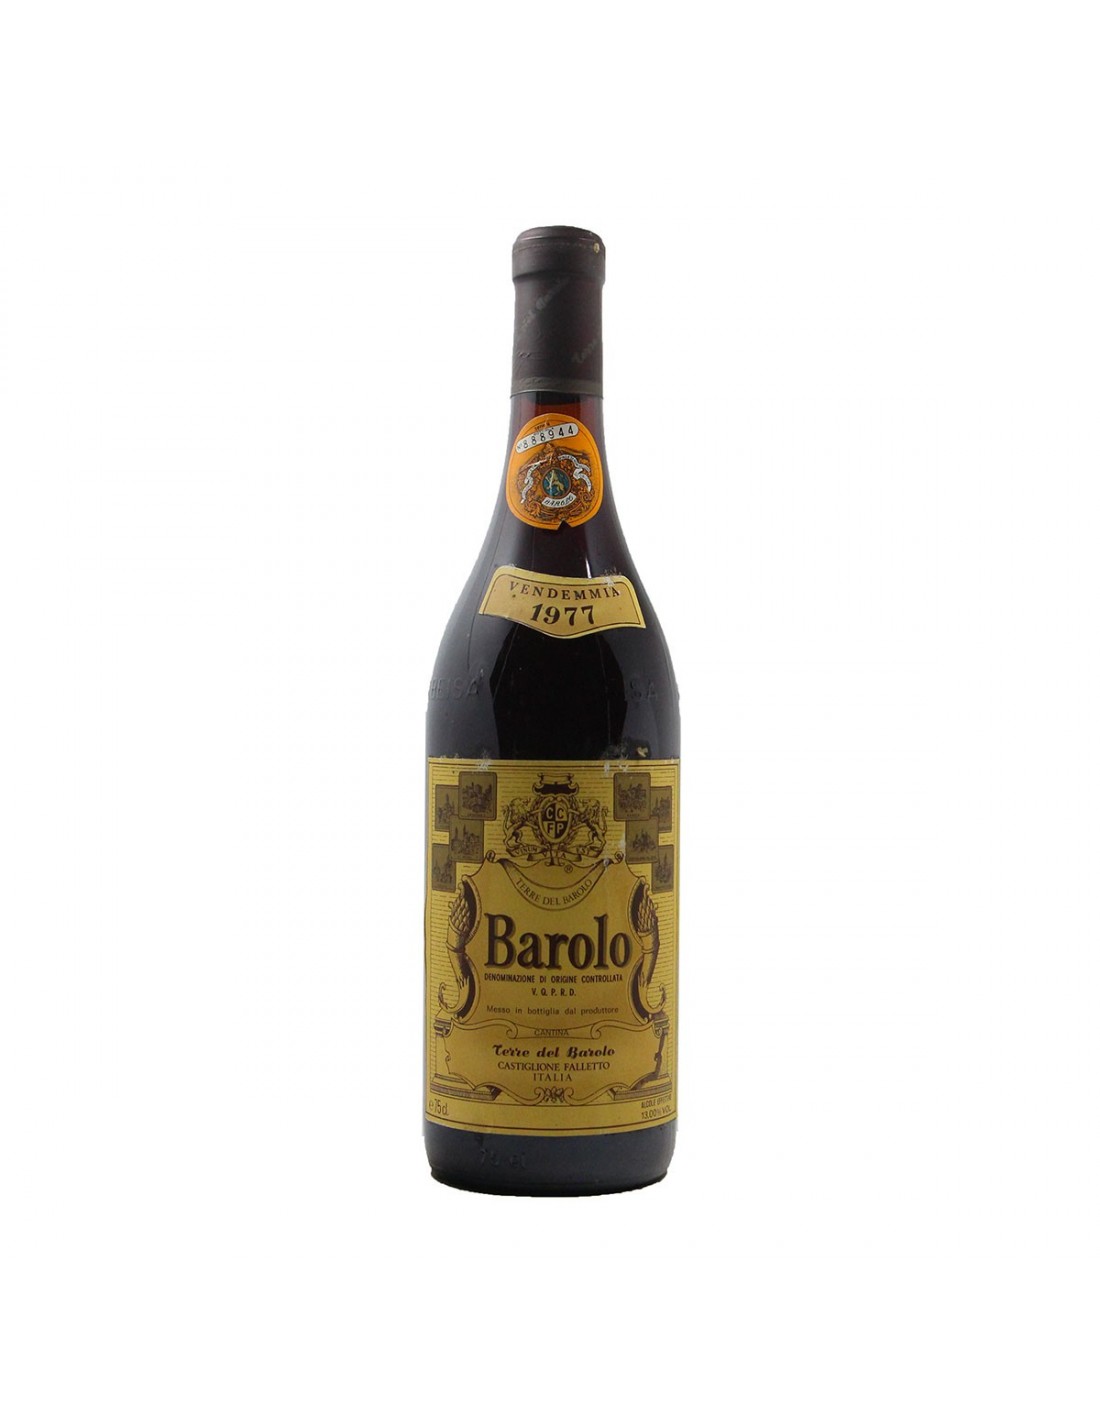 BAROLO 1977 TERRE DEL BAROLO Grandi Bottiglie